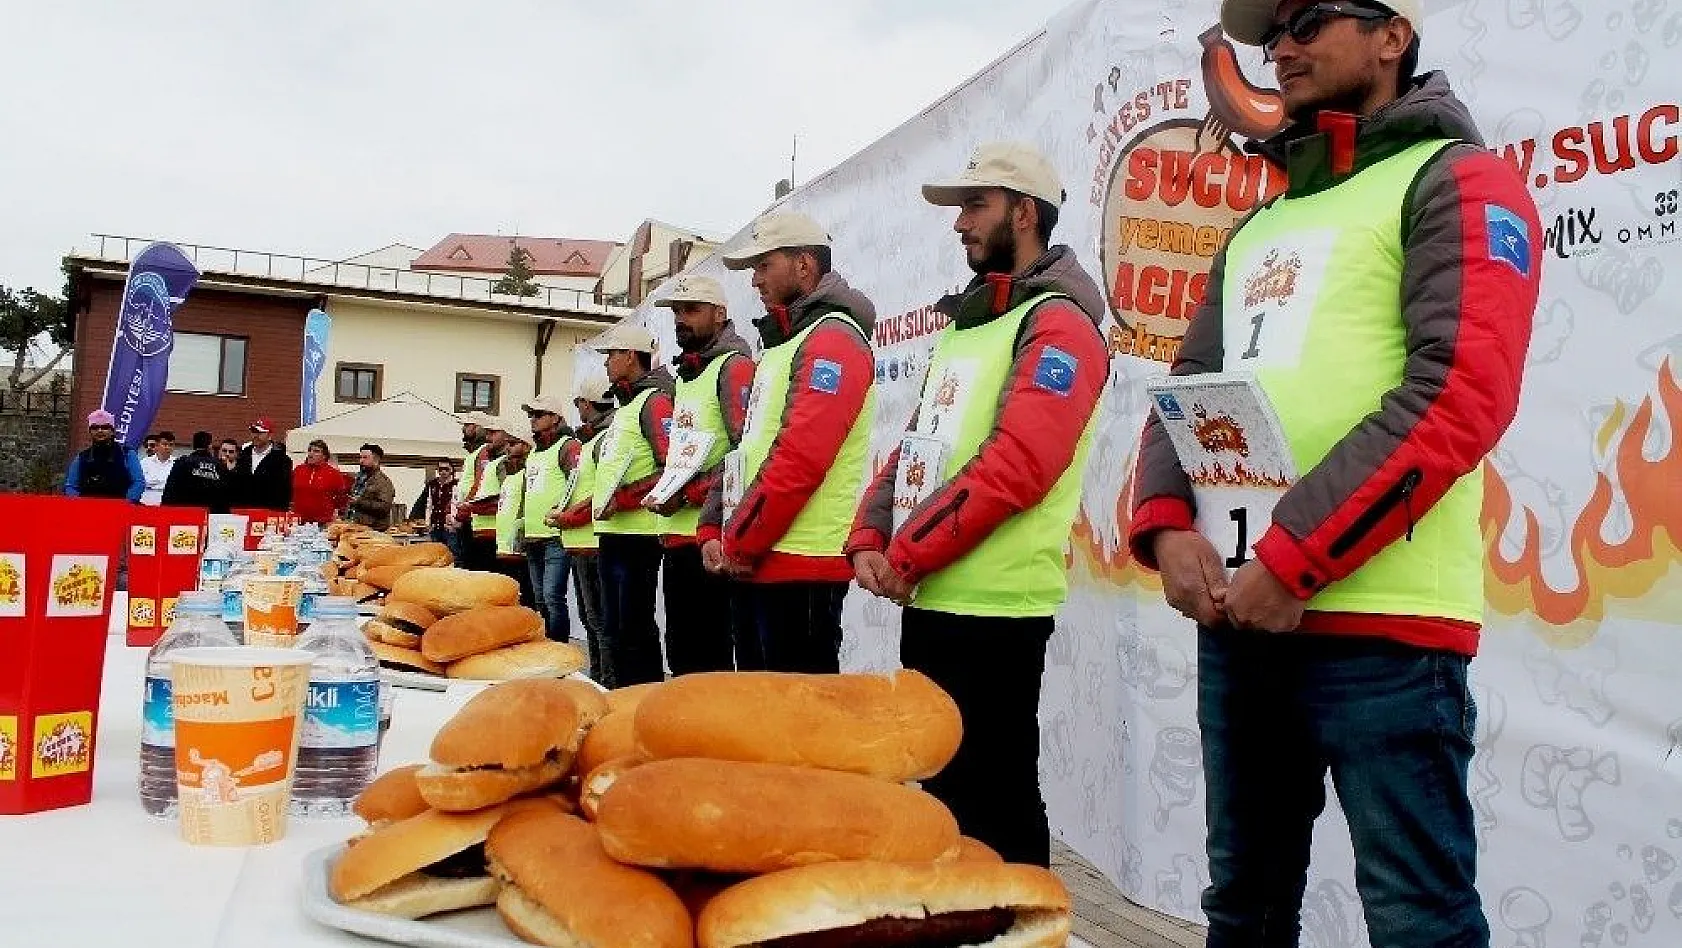 Türkiye'nin ilk ve tek Sucuk Ekmek Yeme Yarışması 'Sucukla Patla' üçüncü kez yine Erciyes'te